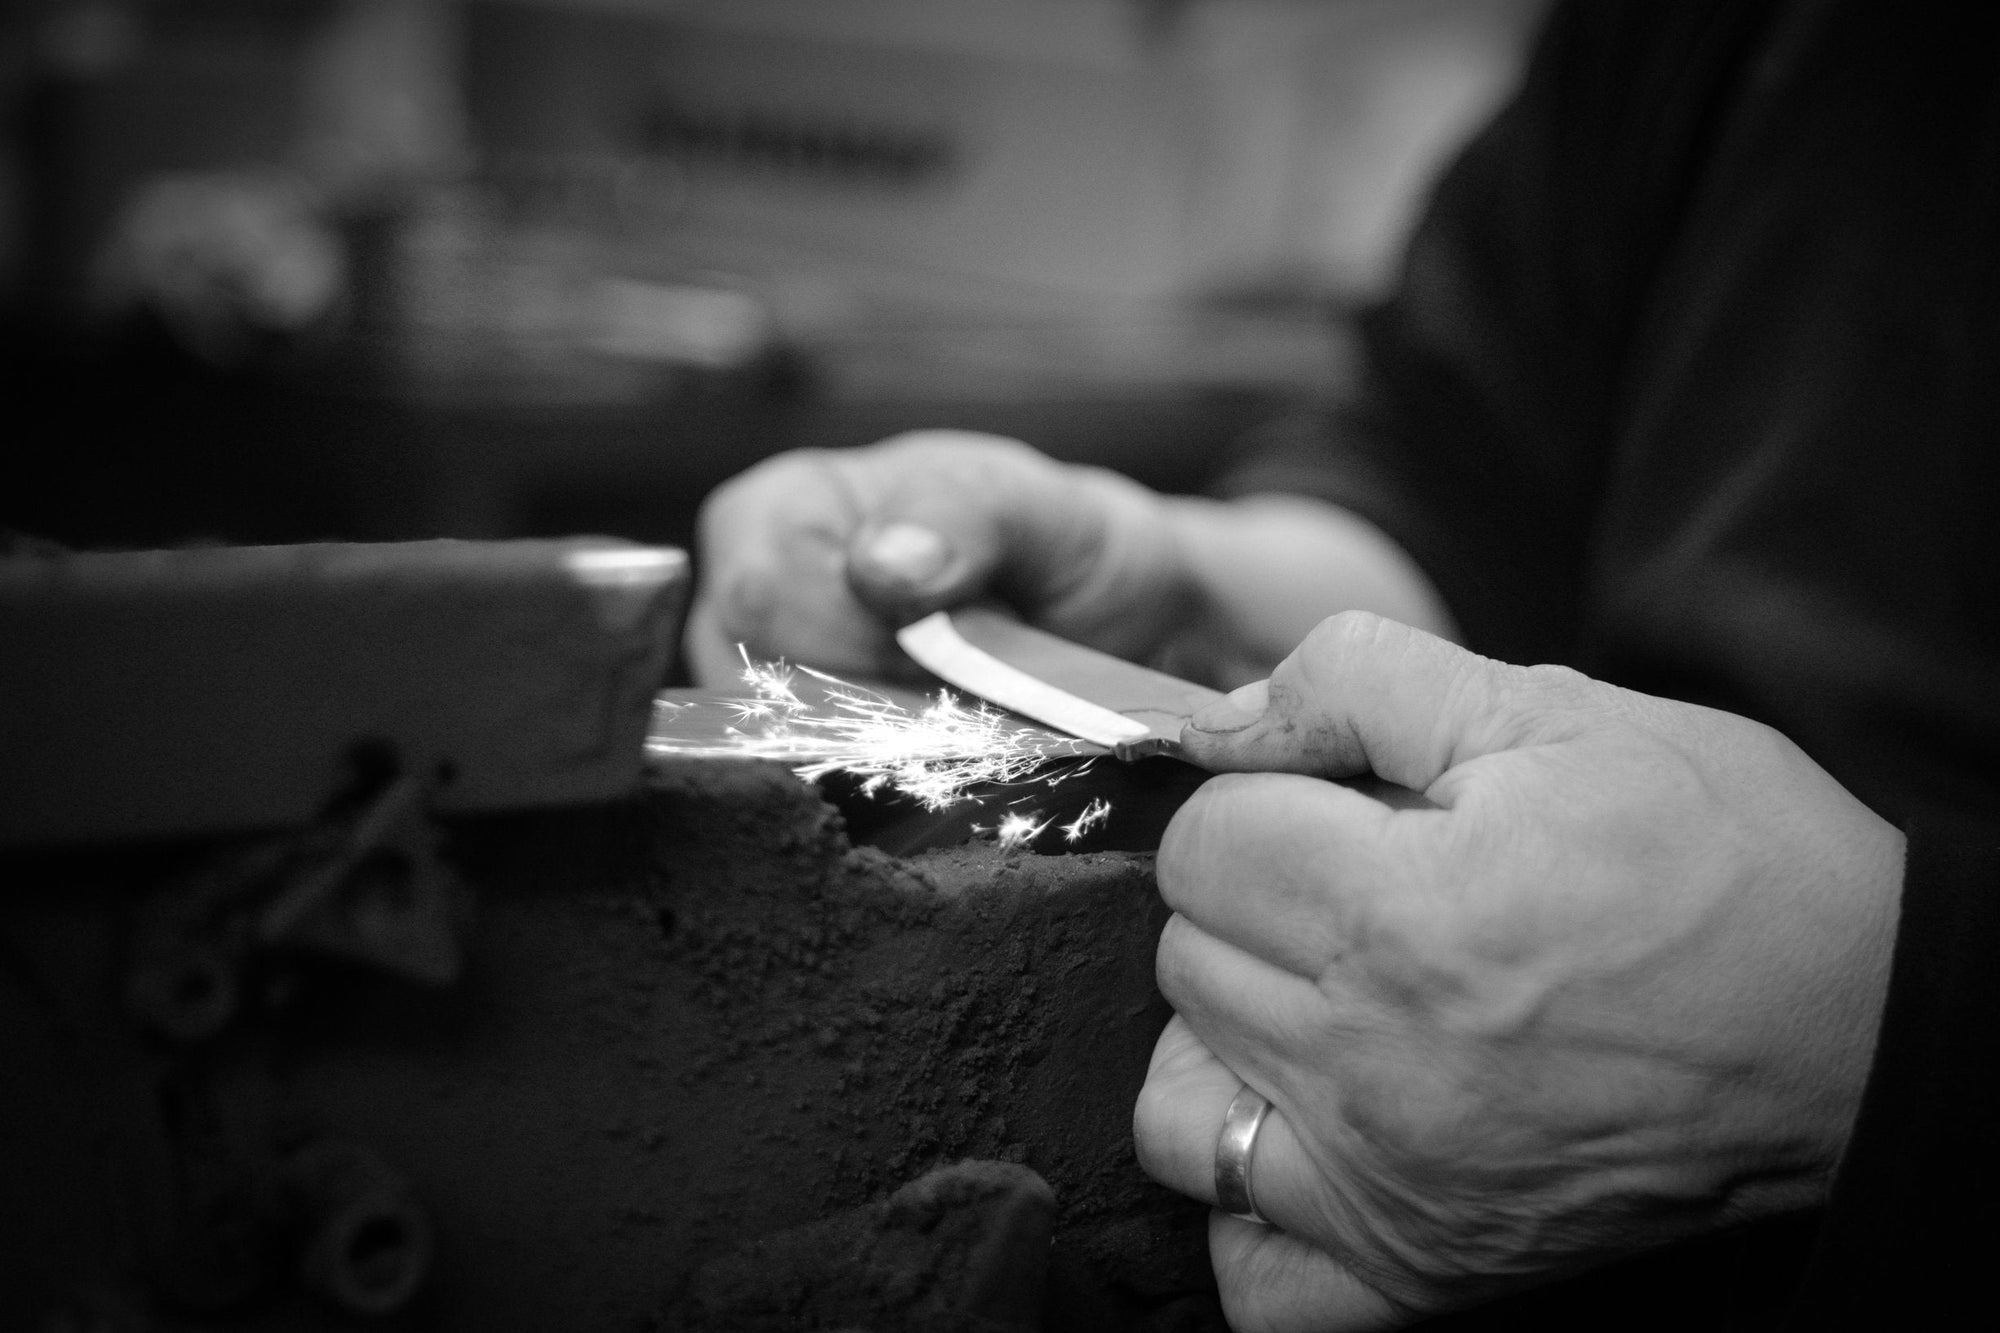 Roselli handmade knife being sharpened 